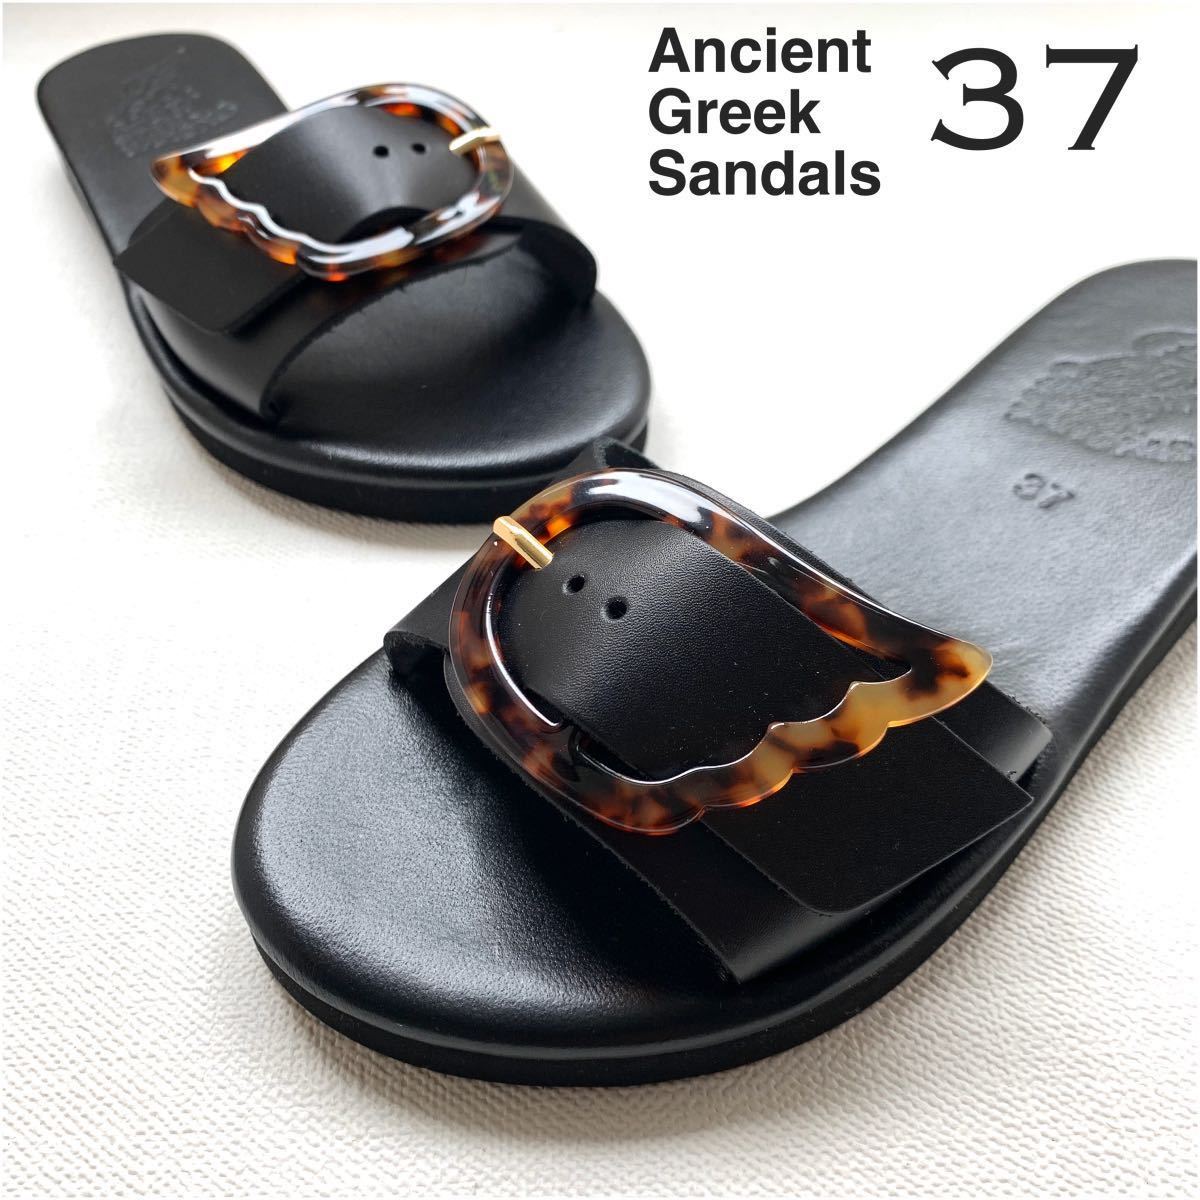 新品 2020SS Ancient Greek Sandals エンシェント グリーク サンダルズ レザー サンダル レディース 37 黒 ブラック 23.5㎝ 送料無料